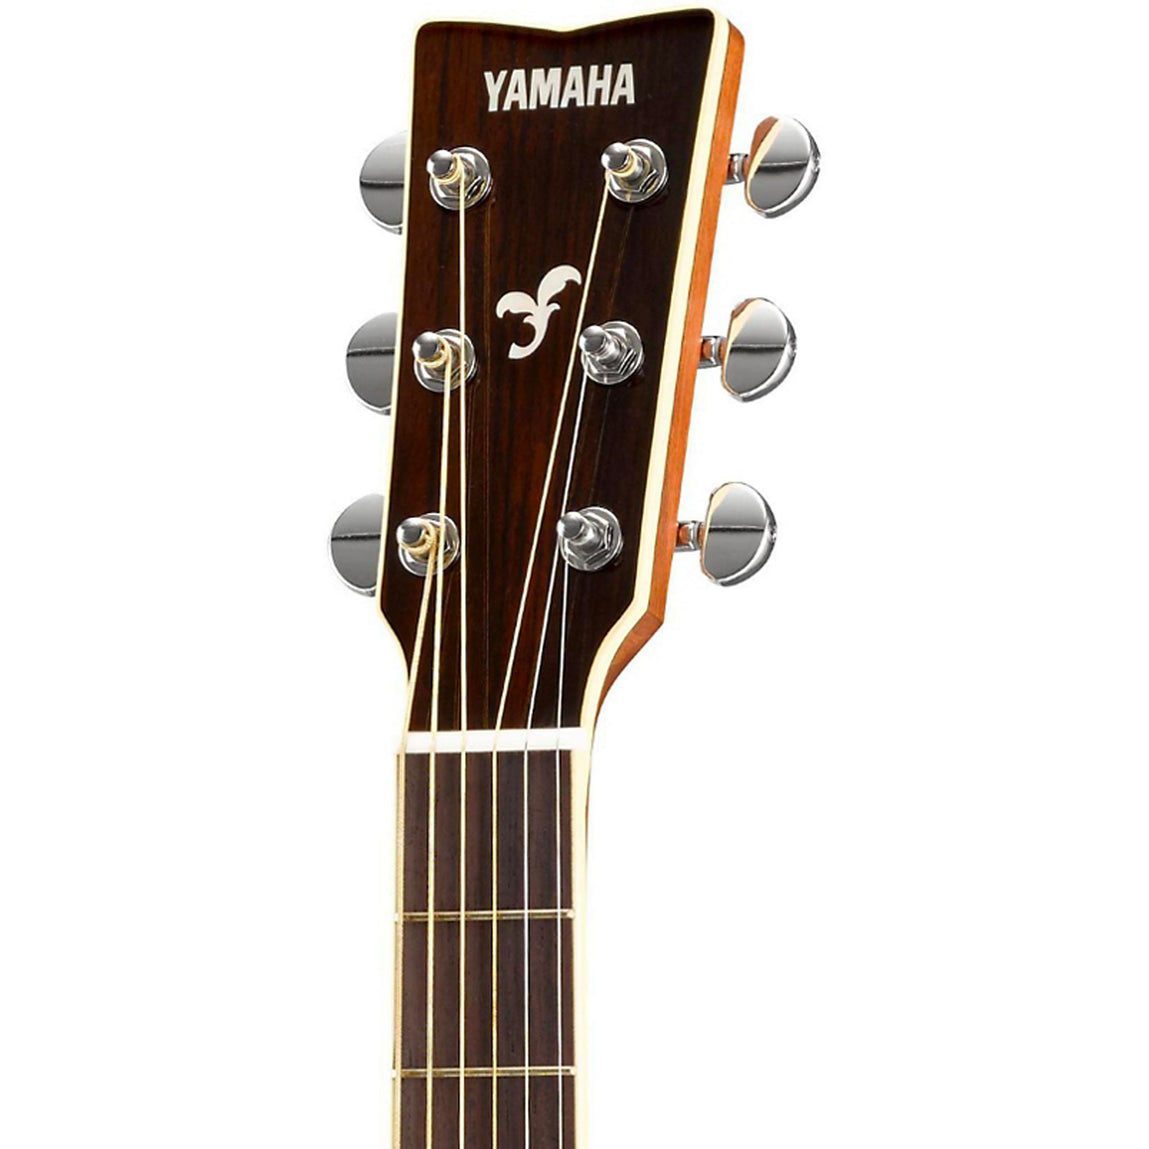 Yamaha FS830 Acoustic Guitar Sunburst Used | The Music Zoo